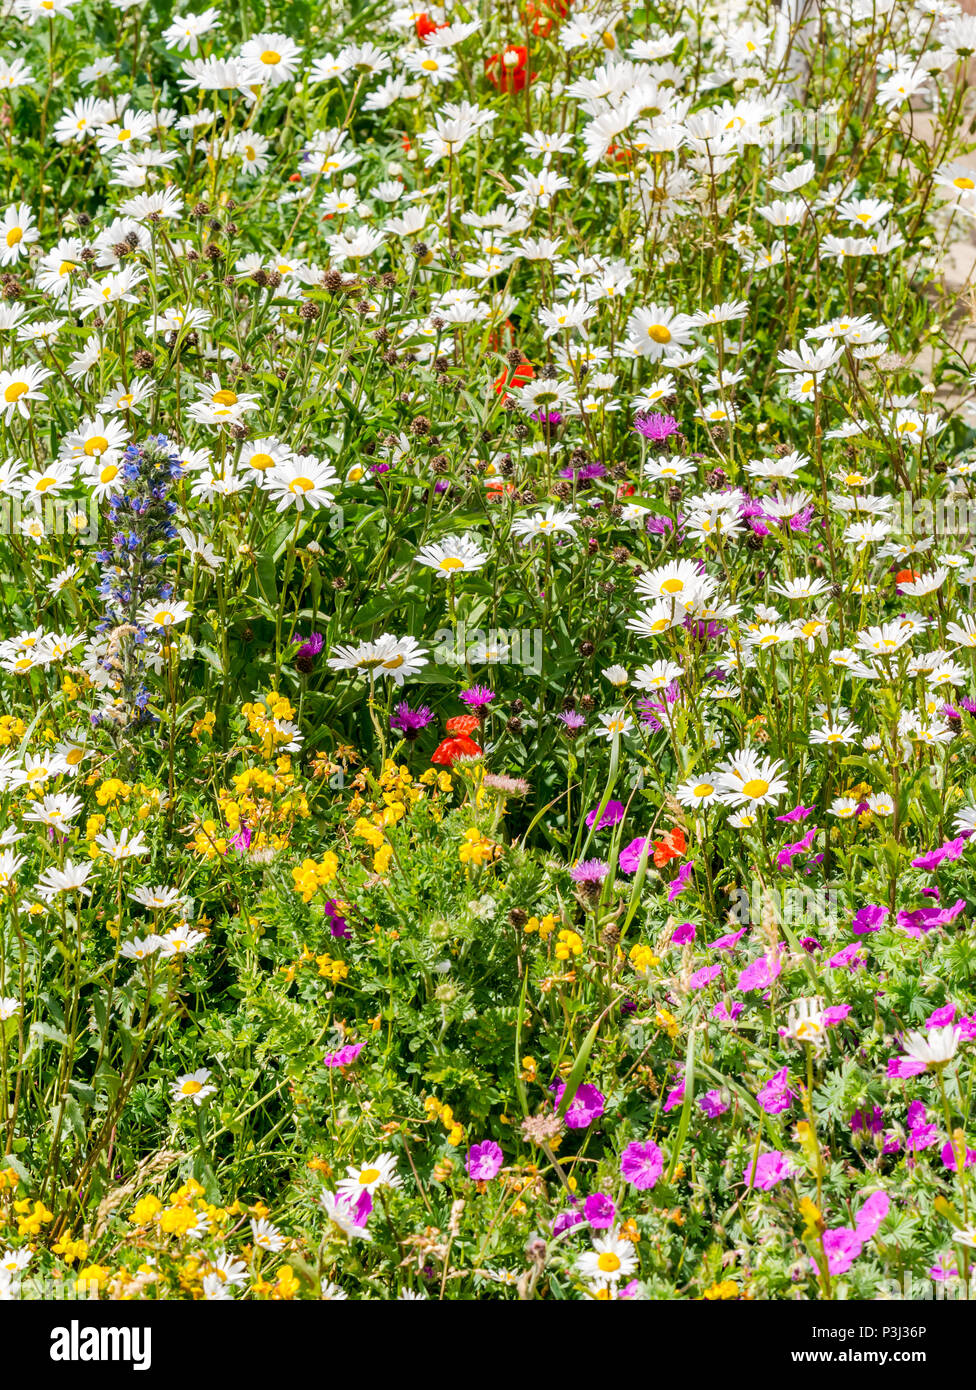 Variedad de flores silvestres: mayweed costera mixtos, sangrientos cranesbill, bird's Foot trefoil, víboras bugloss, North Berwick, East Lothian, Escocia, Reino Unido Foto de stock